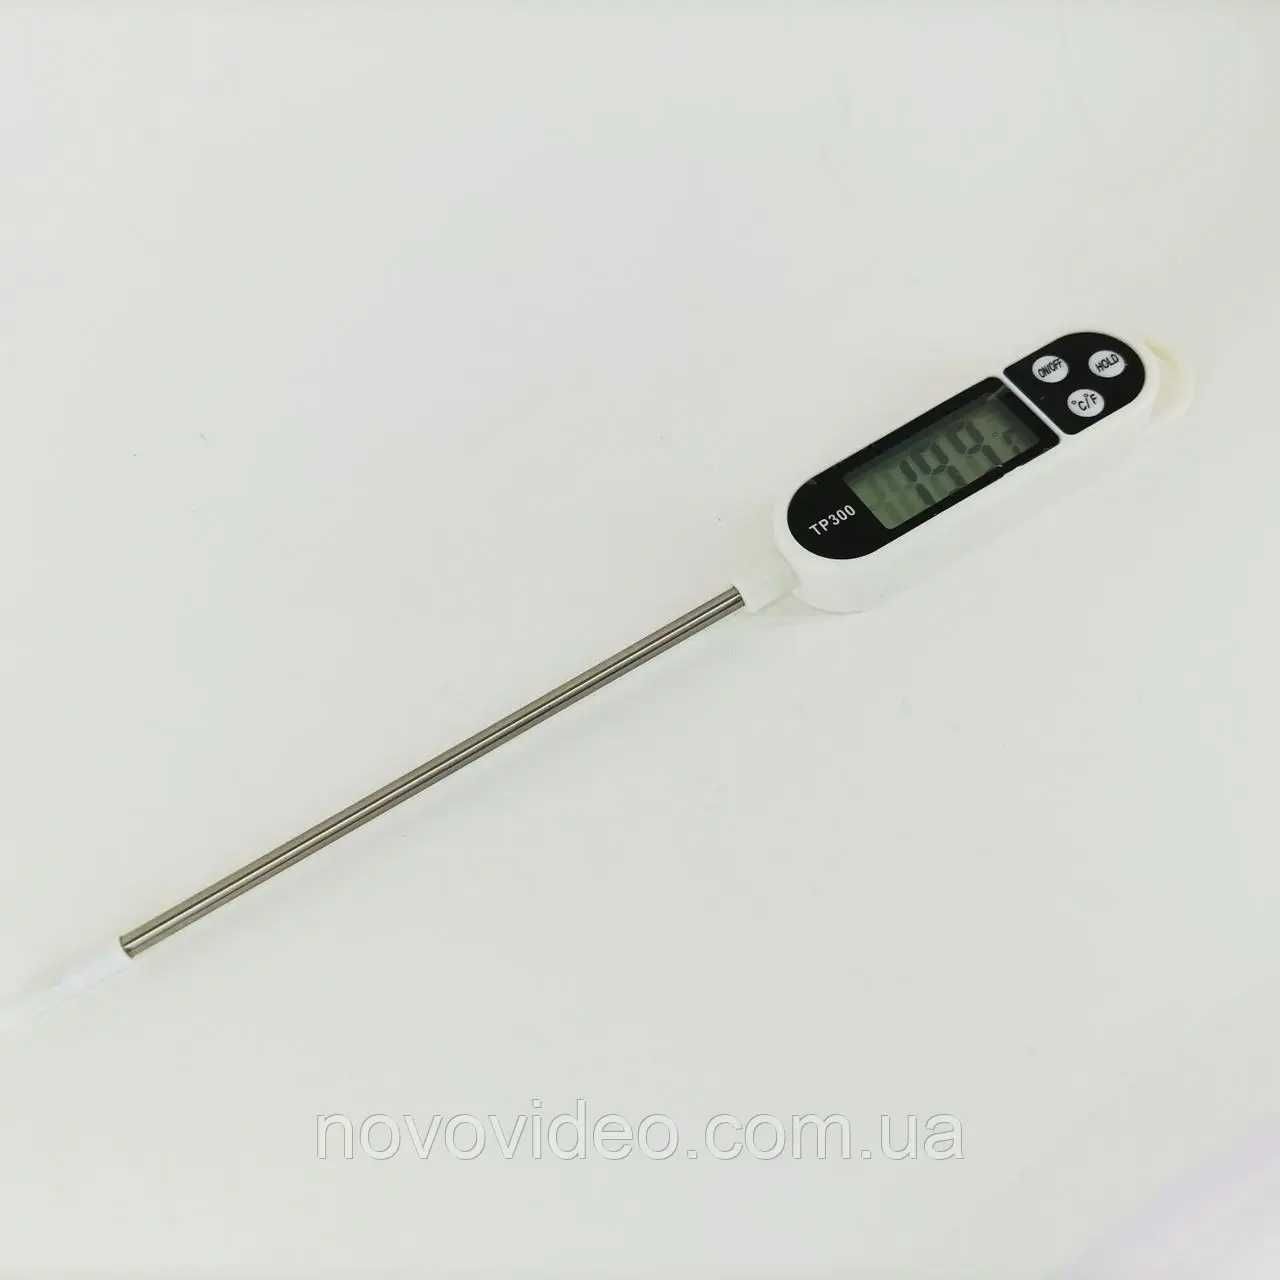 Термометр TP- 300 с нержавеющим щупом для почвы, пищи, жидкостей